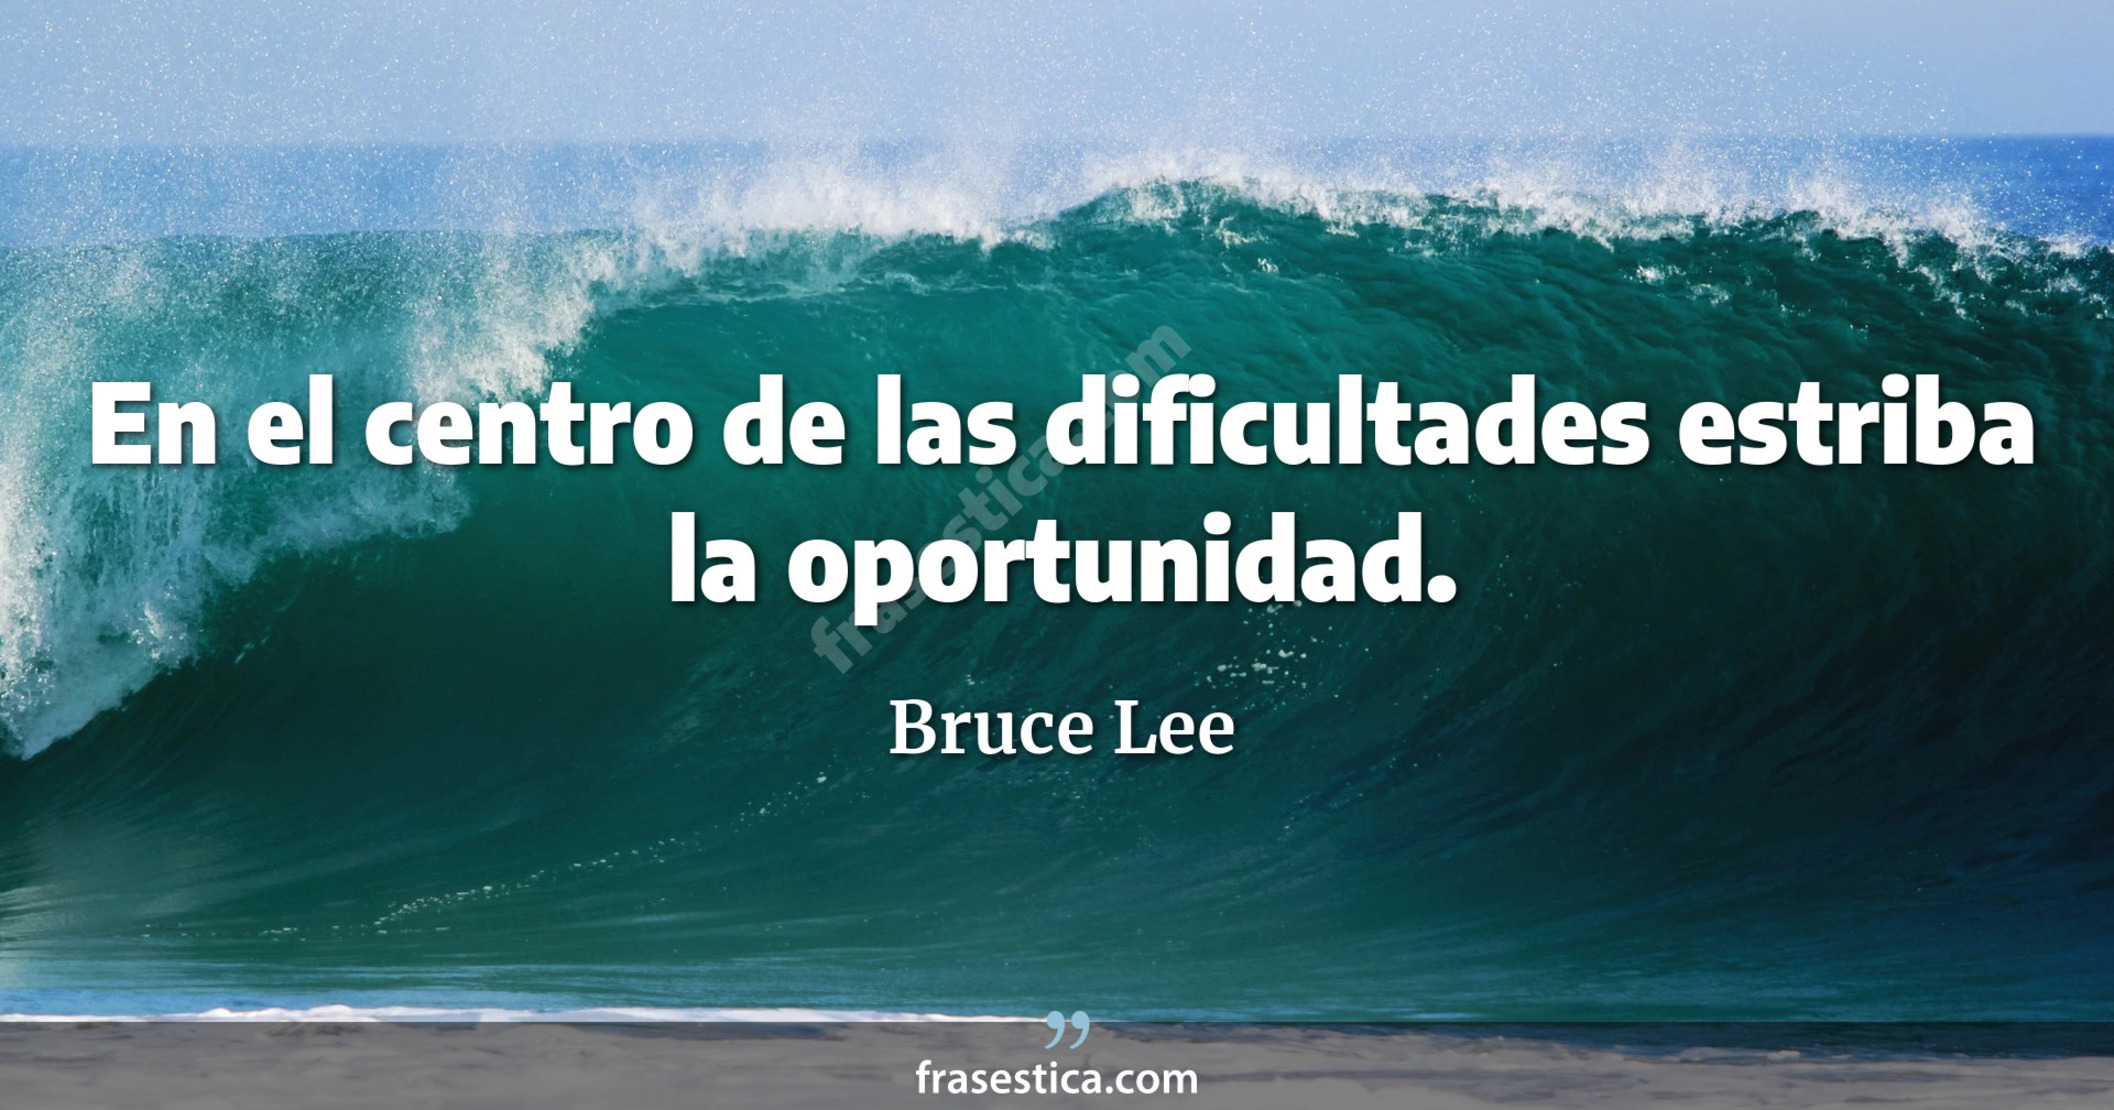 En el centro de las dificultades estriba la oportunidad. - Bruce Lee